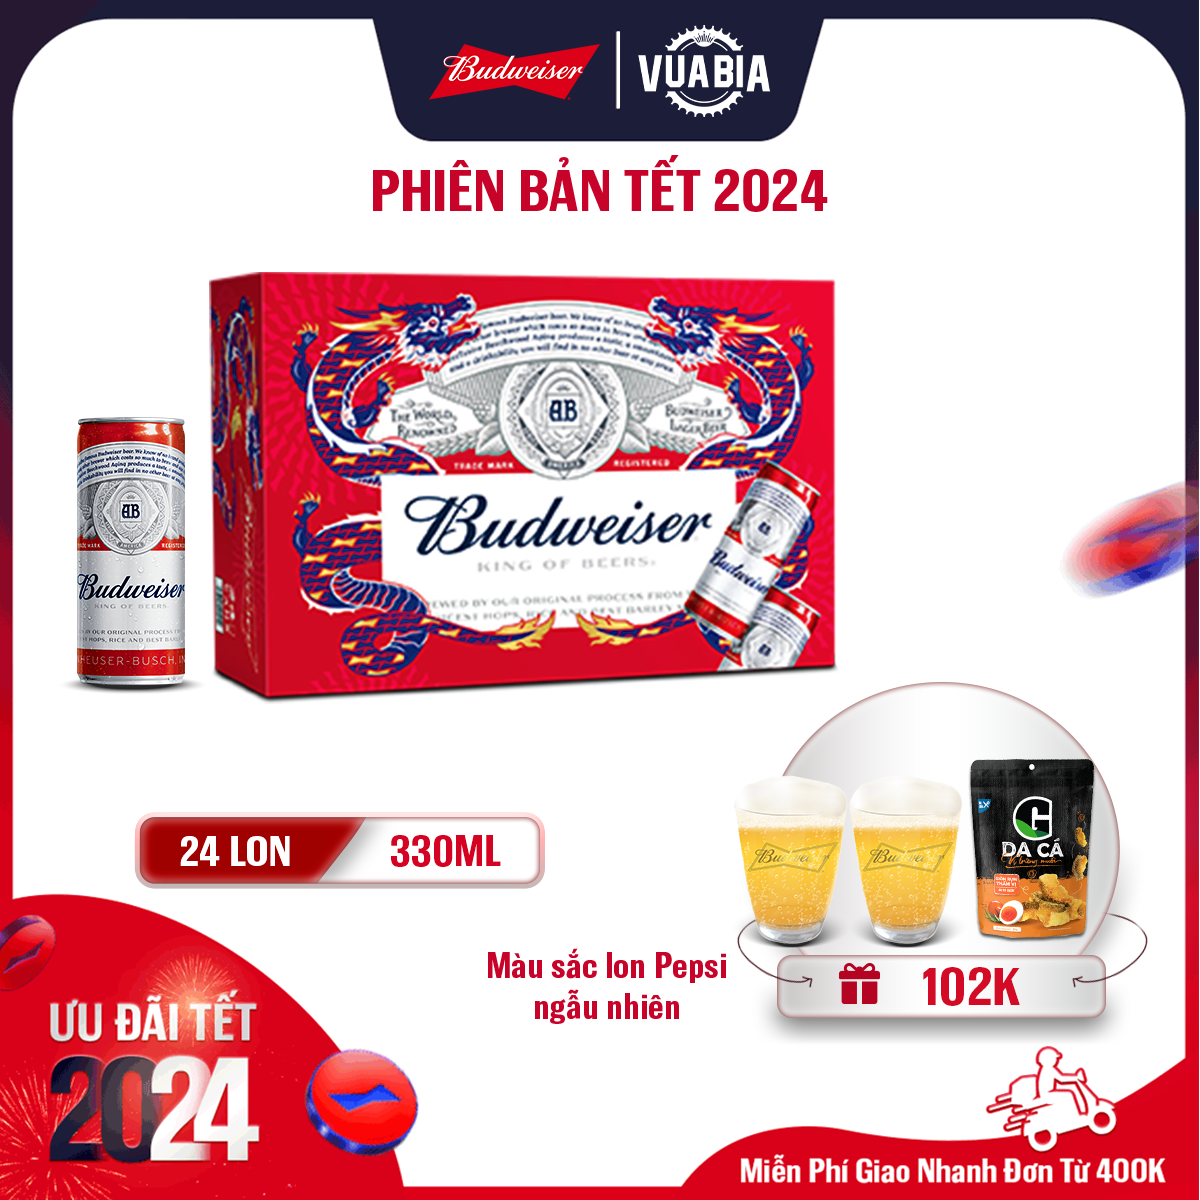 [FREESHIP] Bia Budweiser Thùng 24 Lon 330ml - Phiên Bản Tết 2024 - Tặng 2 Ly Thủy Tinh Budweiser + 1 Da Cá